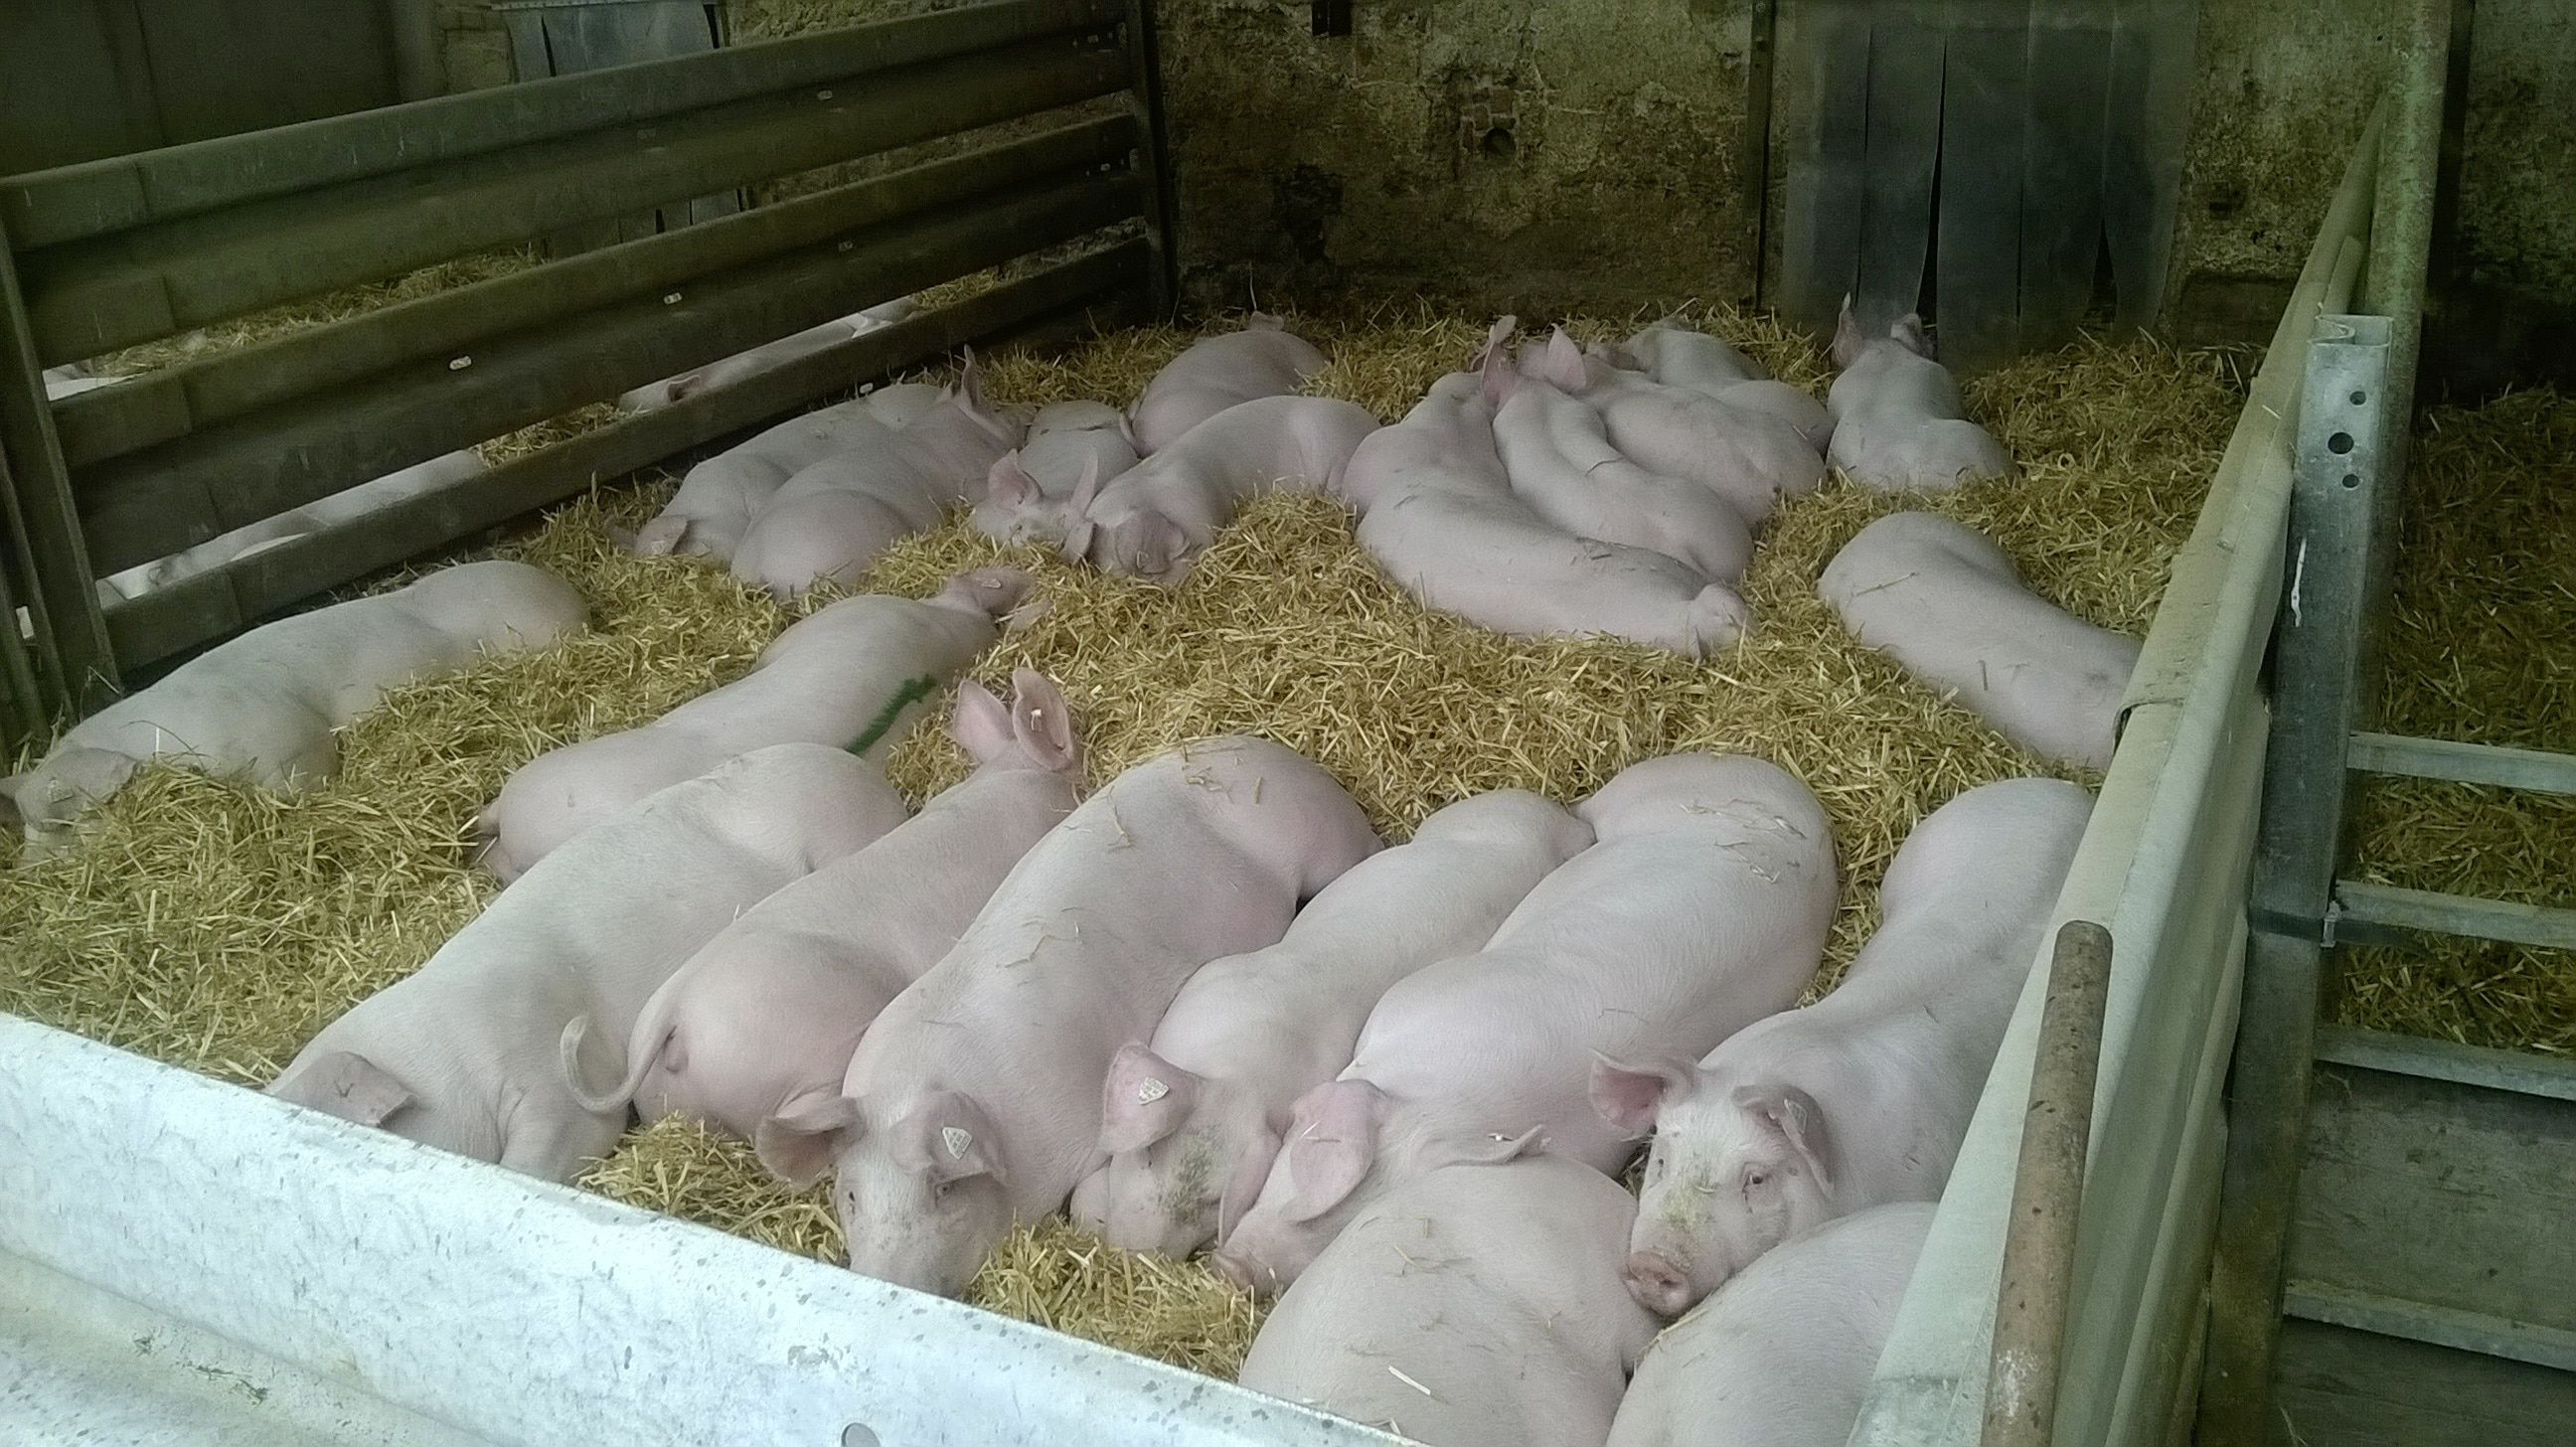 Schweinehaltung – die Signale stehen auf Stroh | Bauernzeitung